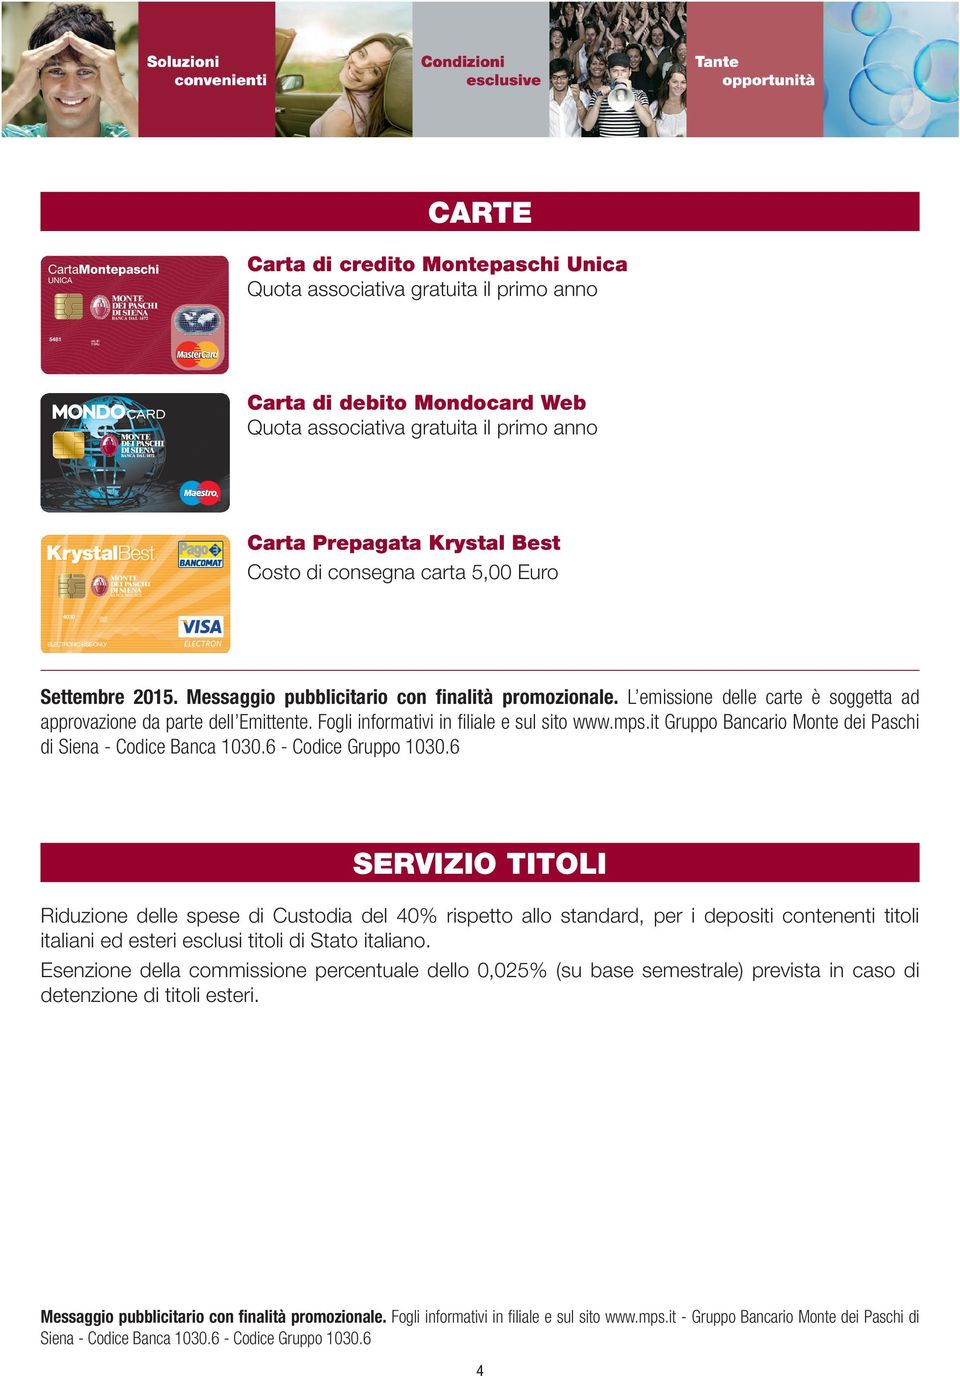 Fogli informativi in filiale e sul sito www.mps.it Gruppo Bancario Monte dei Paschi di Siena - Codice Banca 1030.6 - Codice Gruppo 1030.